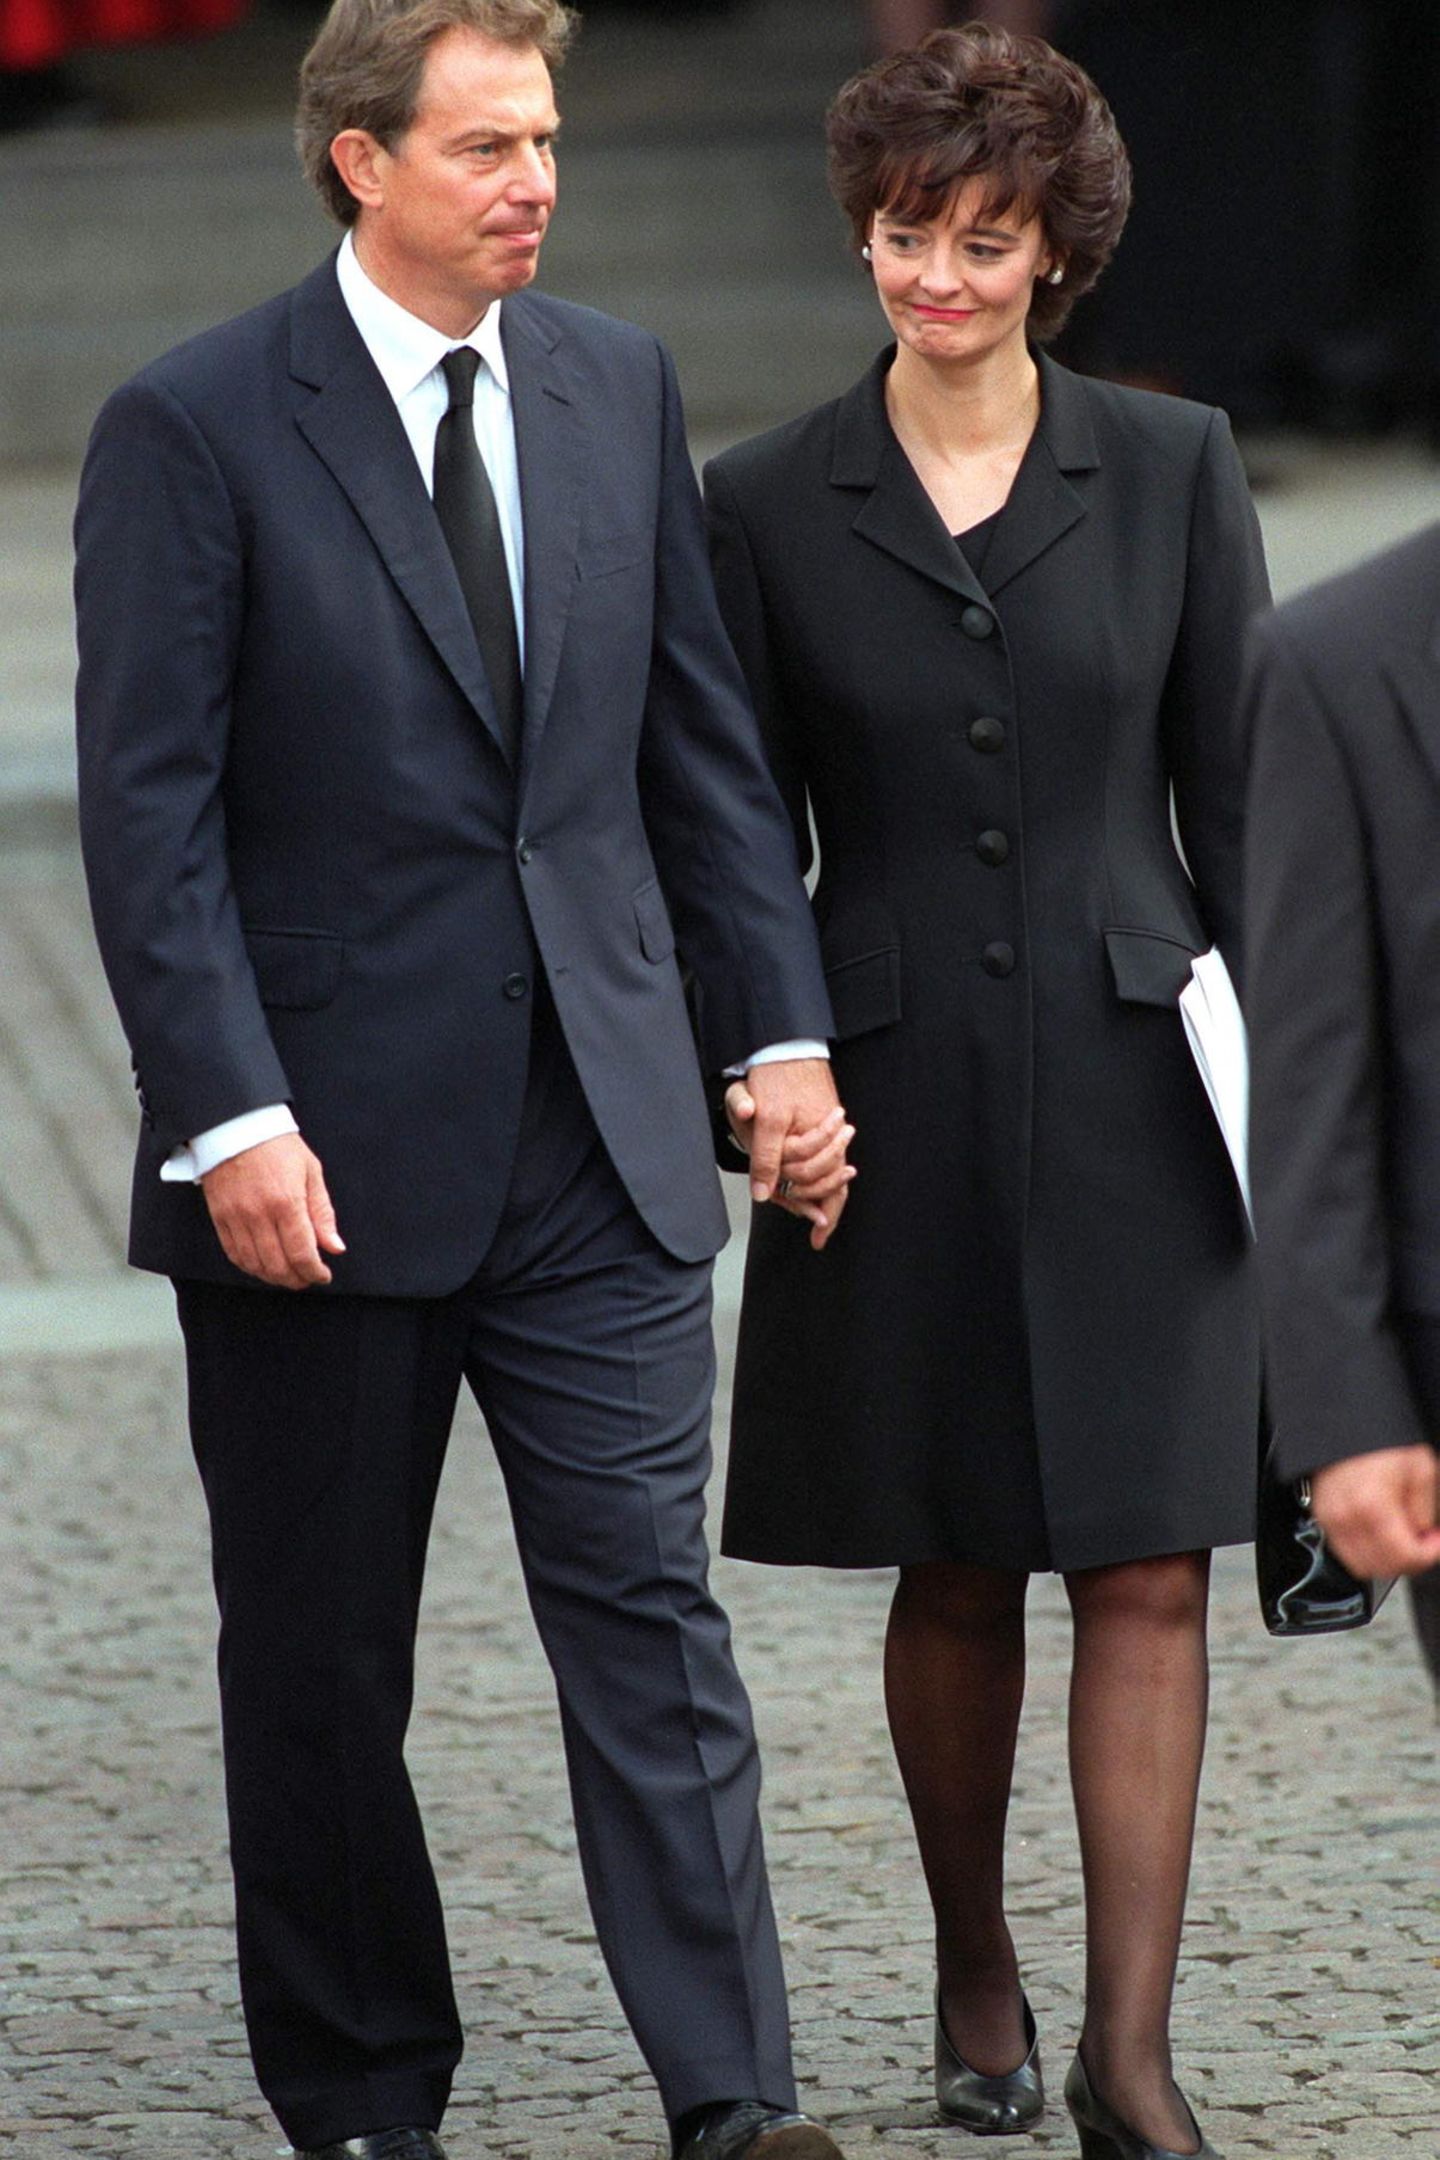 Ebenfalls unter den Gästen: Tony Blair und seine Ehefrau Cherie. Blair ist erst einige Wochen im Amt des Premierministers, als Diana stirb -  und sieht sich zugleich mit einer der größten Herausforderungen seiner Karriere konfrontiert: dem Krisenmanagement zwischen der schweigenden Queen auf Schloss Balmoral und dem verärgerten Volk in London. Mit Erfolg: Einen Tag zuvor, am 5. September, hatte die Queen mit einer berührenden Rede an die Nation die Wogen geglättet. 